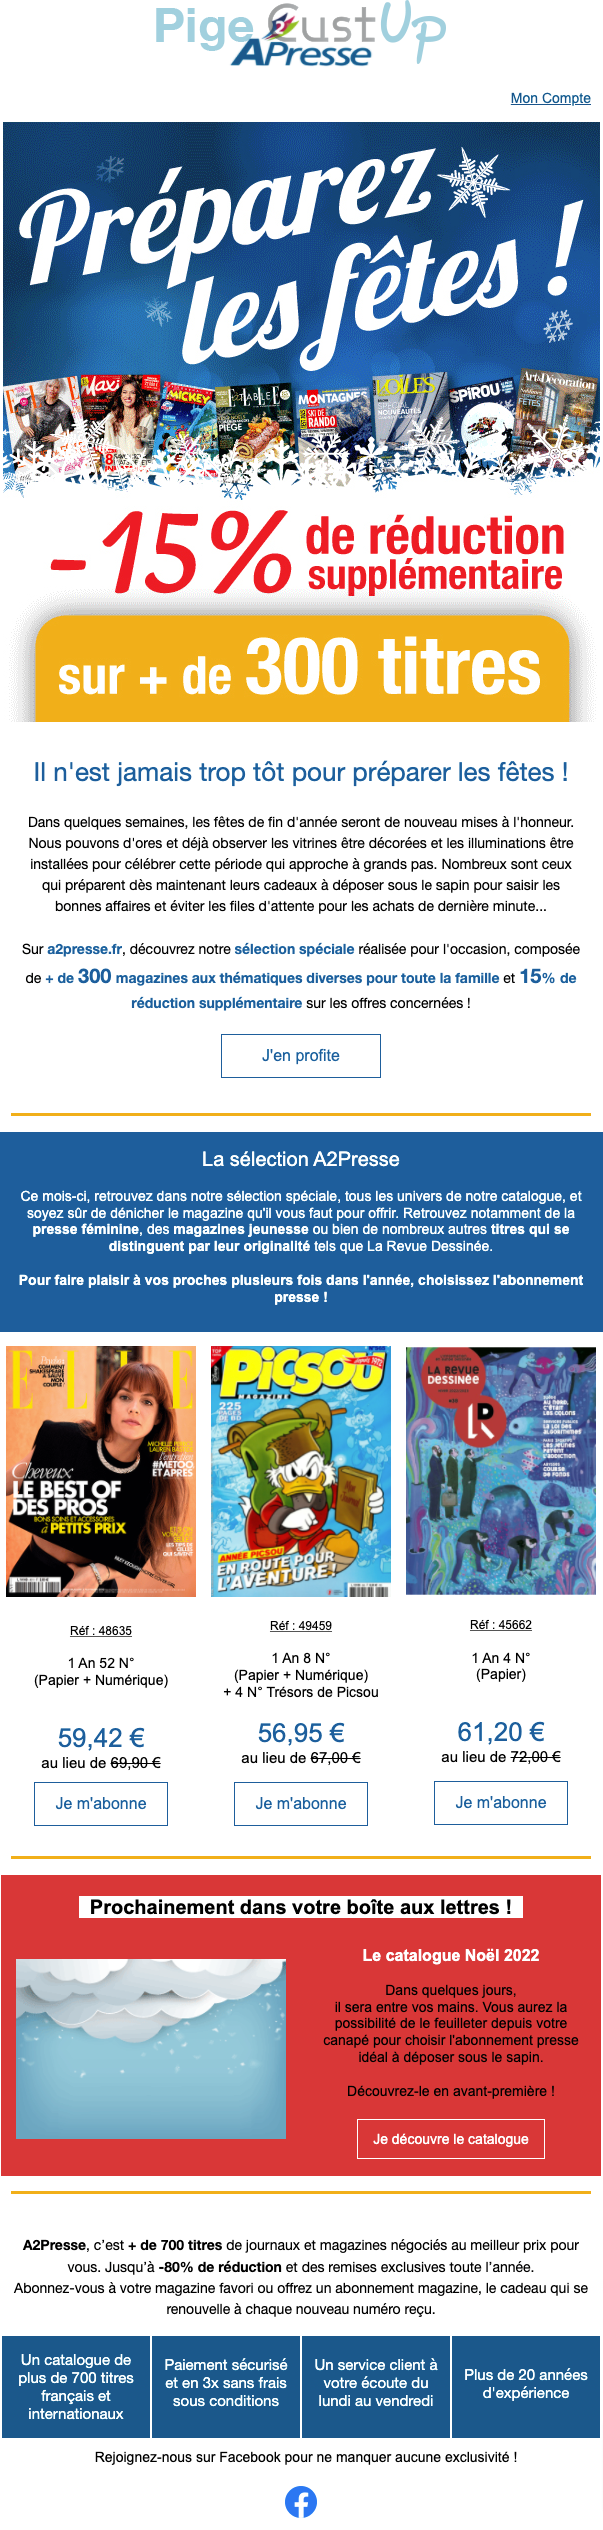 Exemple de Type de media  e-mailing - A2presse - Marketing relationnel - Calendaire (Noël, St valentin, Vœux, …)